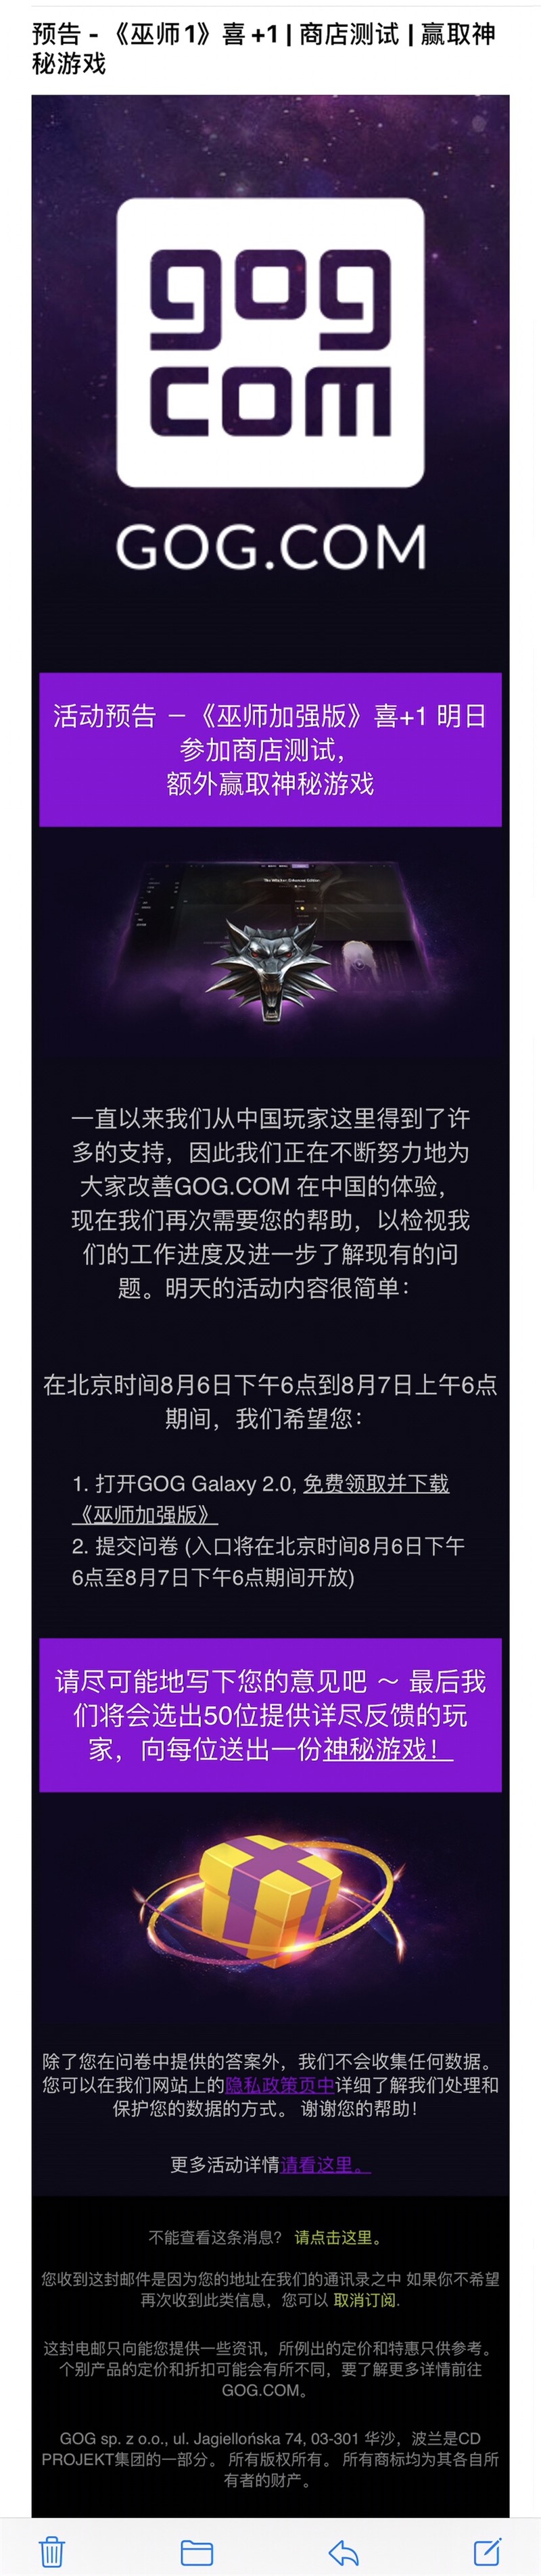 GOG 喜加一：8 月 6 日、7 日《巫师加强版》免费领GOG 商店官方消息，明后两天（北京时间从 8 月 6 日下午 6 点至 8 月 7 日上午 6 点期间），各位玩家可以在 GOG Galaxy 2.0 免费领取《巫师加强版》。GOG 商店官方消息，明后两天（北京时间从 8 月 6 日下午 6 点至 8 月 7 日上午 6 点期间），各位玩家可以在 GOG Galaxy 2.0 免费领取《巫师加强版》。